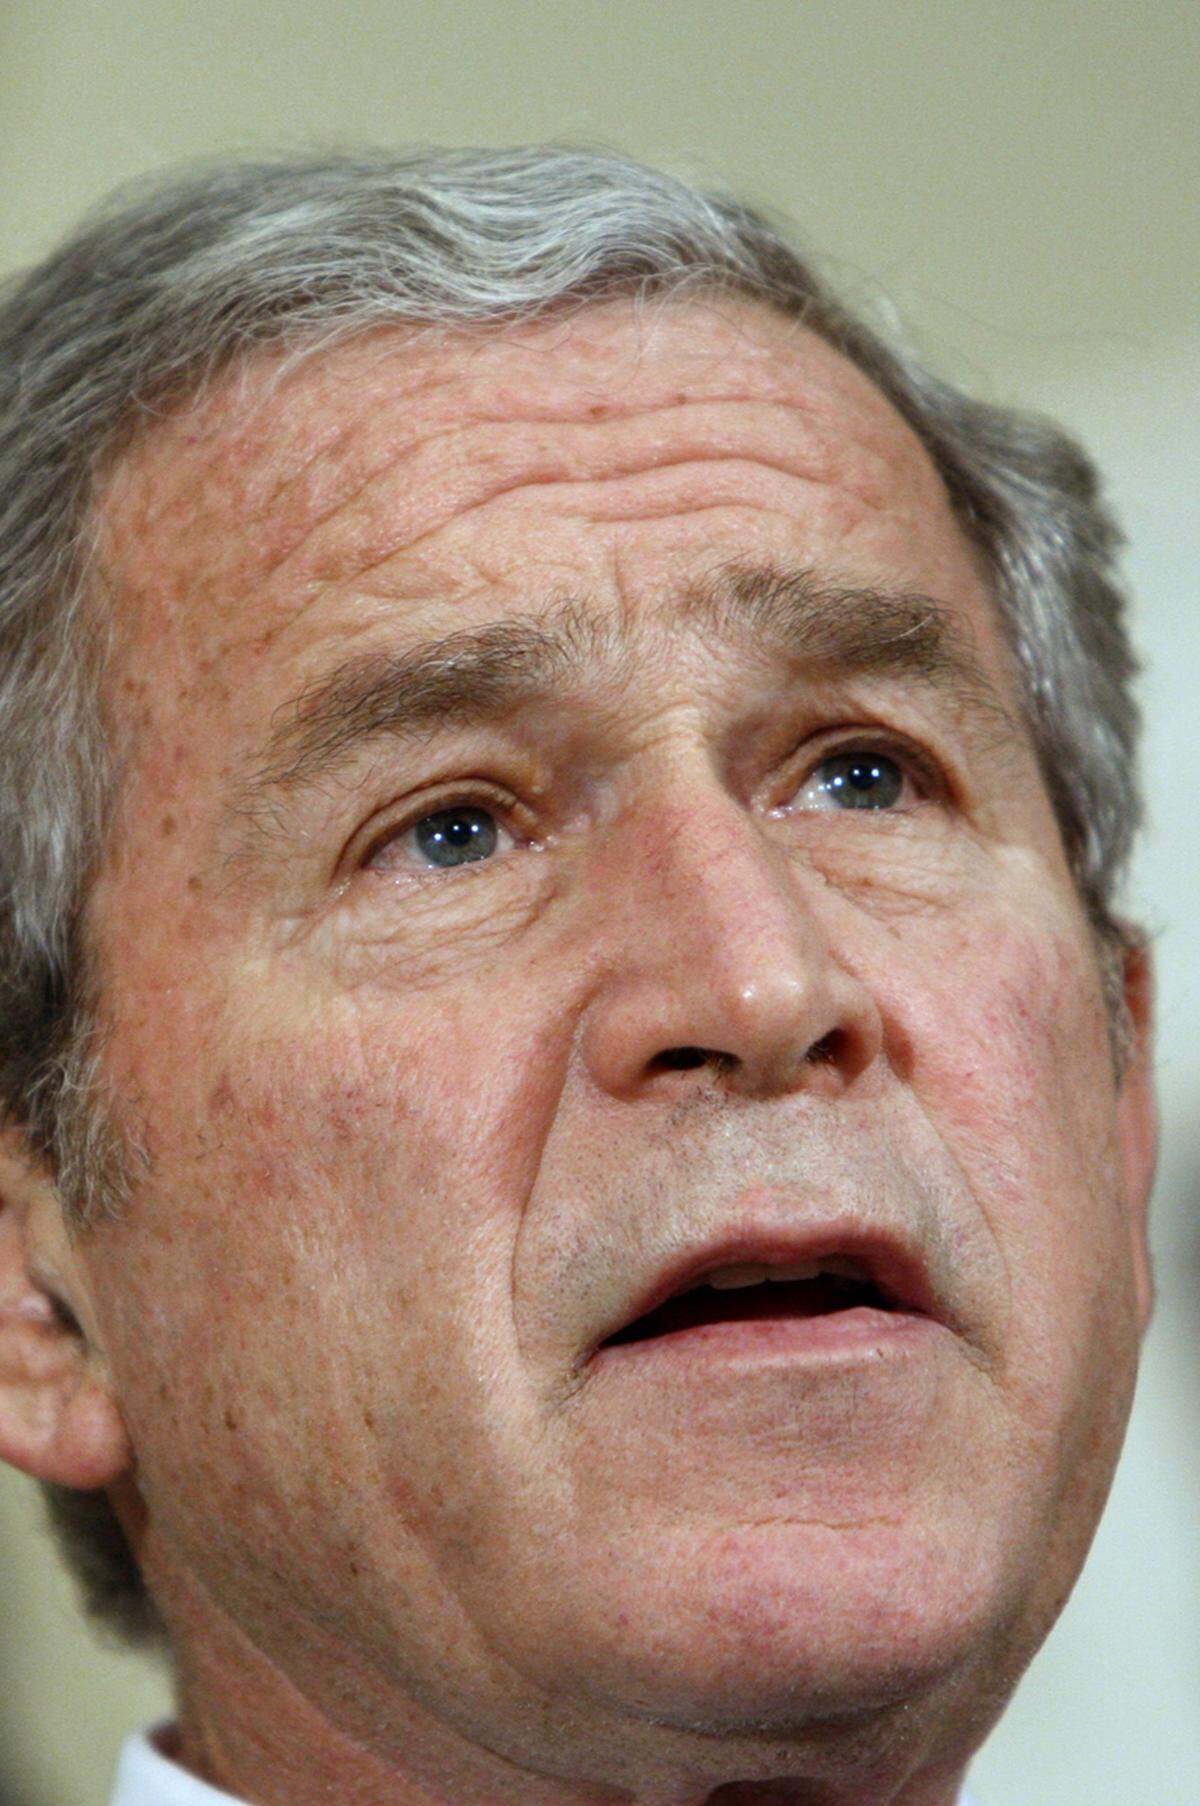  "Gestern war der Teufel hier, genau hier. ... Und es riecht hier noch immer nach Schwefel."Chávez 2006 bei der UN-Vollversammlung in New York unter Verweis auf US-Präsident George W. Bush, der am Tag zuvor gesprochen hatte.